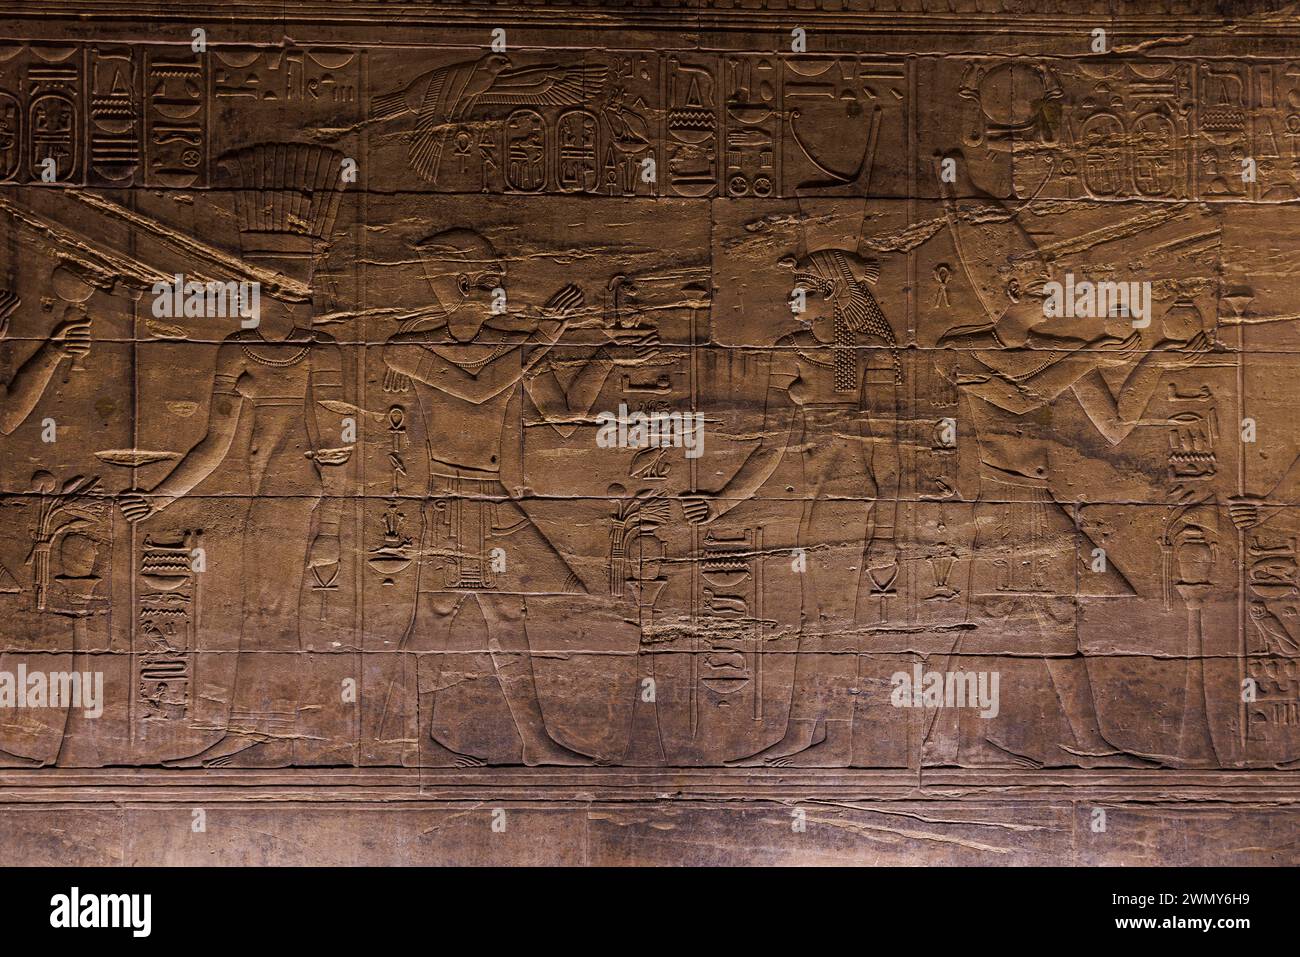 Ägypten, Assuan, nubische Denkmäler von Abu Simbel bis Philae, von der UNESCO zum Weltkulturerbe erklärt, Isis-Tempel in Philae, Heiligtum Raum XI Stockfoto